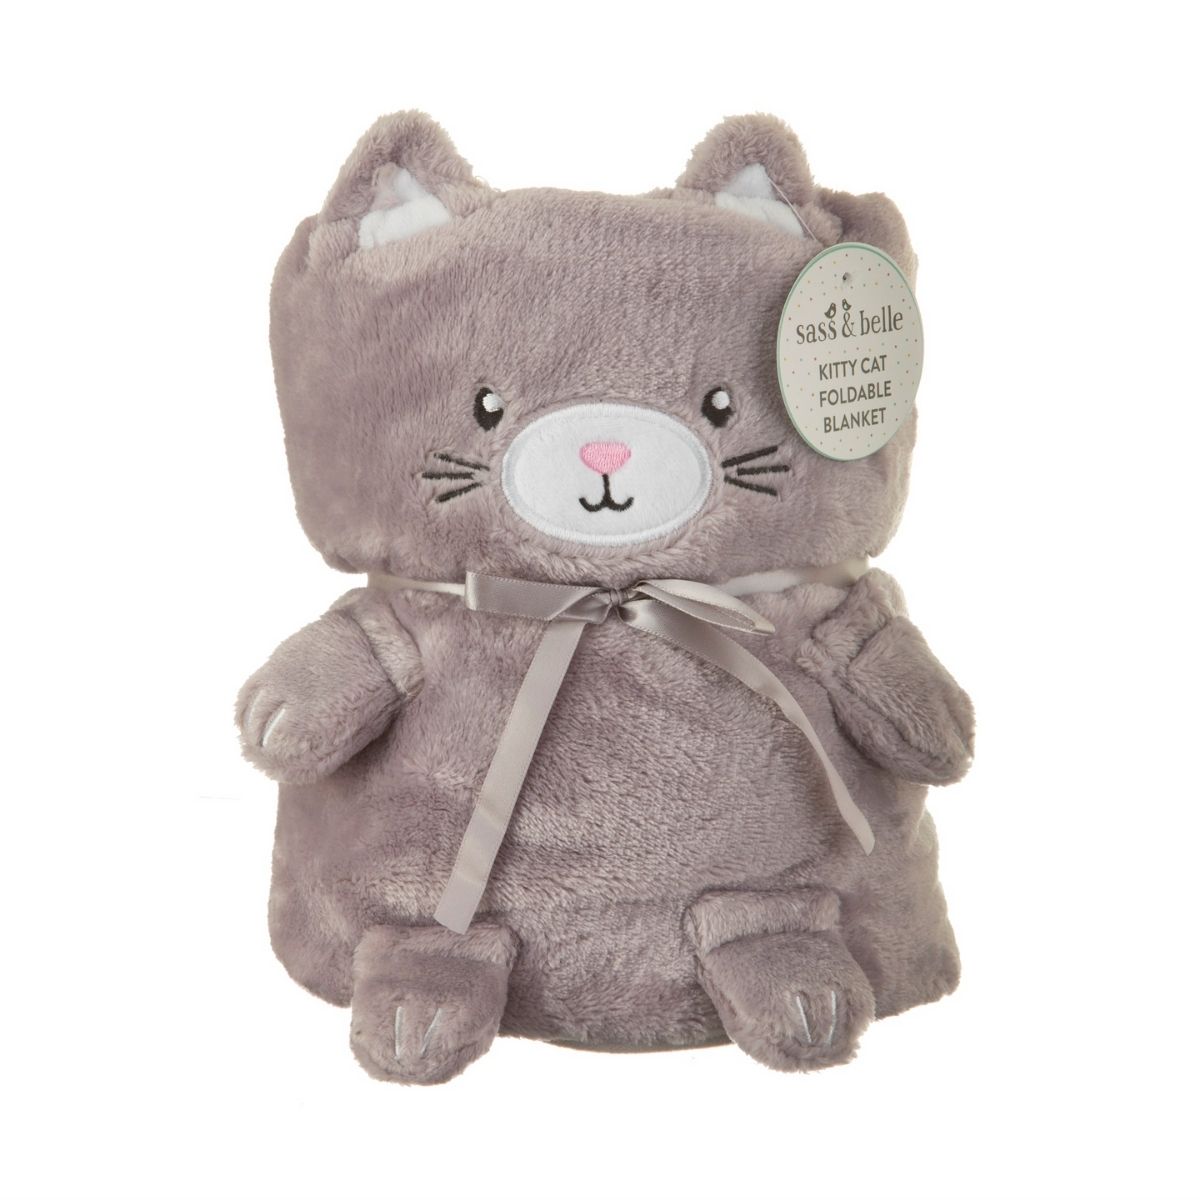 Sass & Belle  Kitty Cat Soft Fleece Baby Blanket